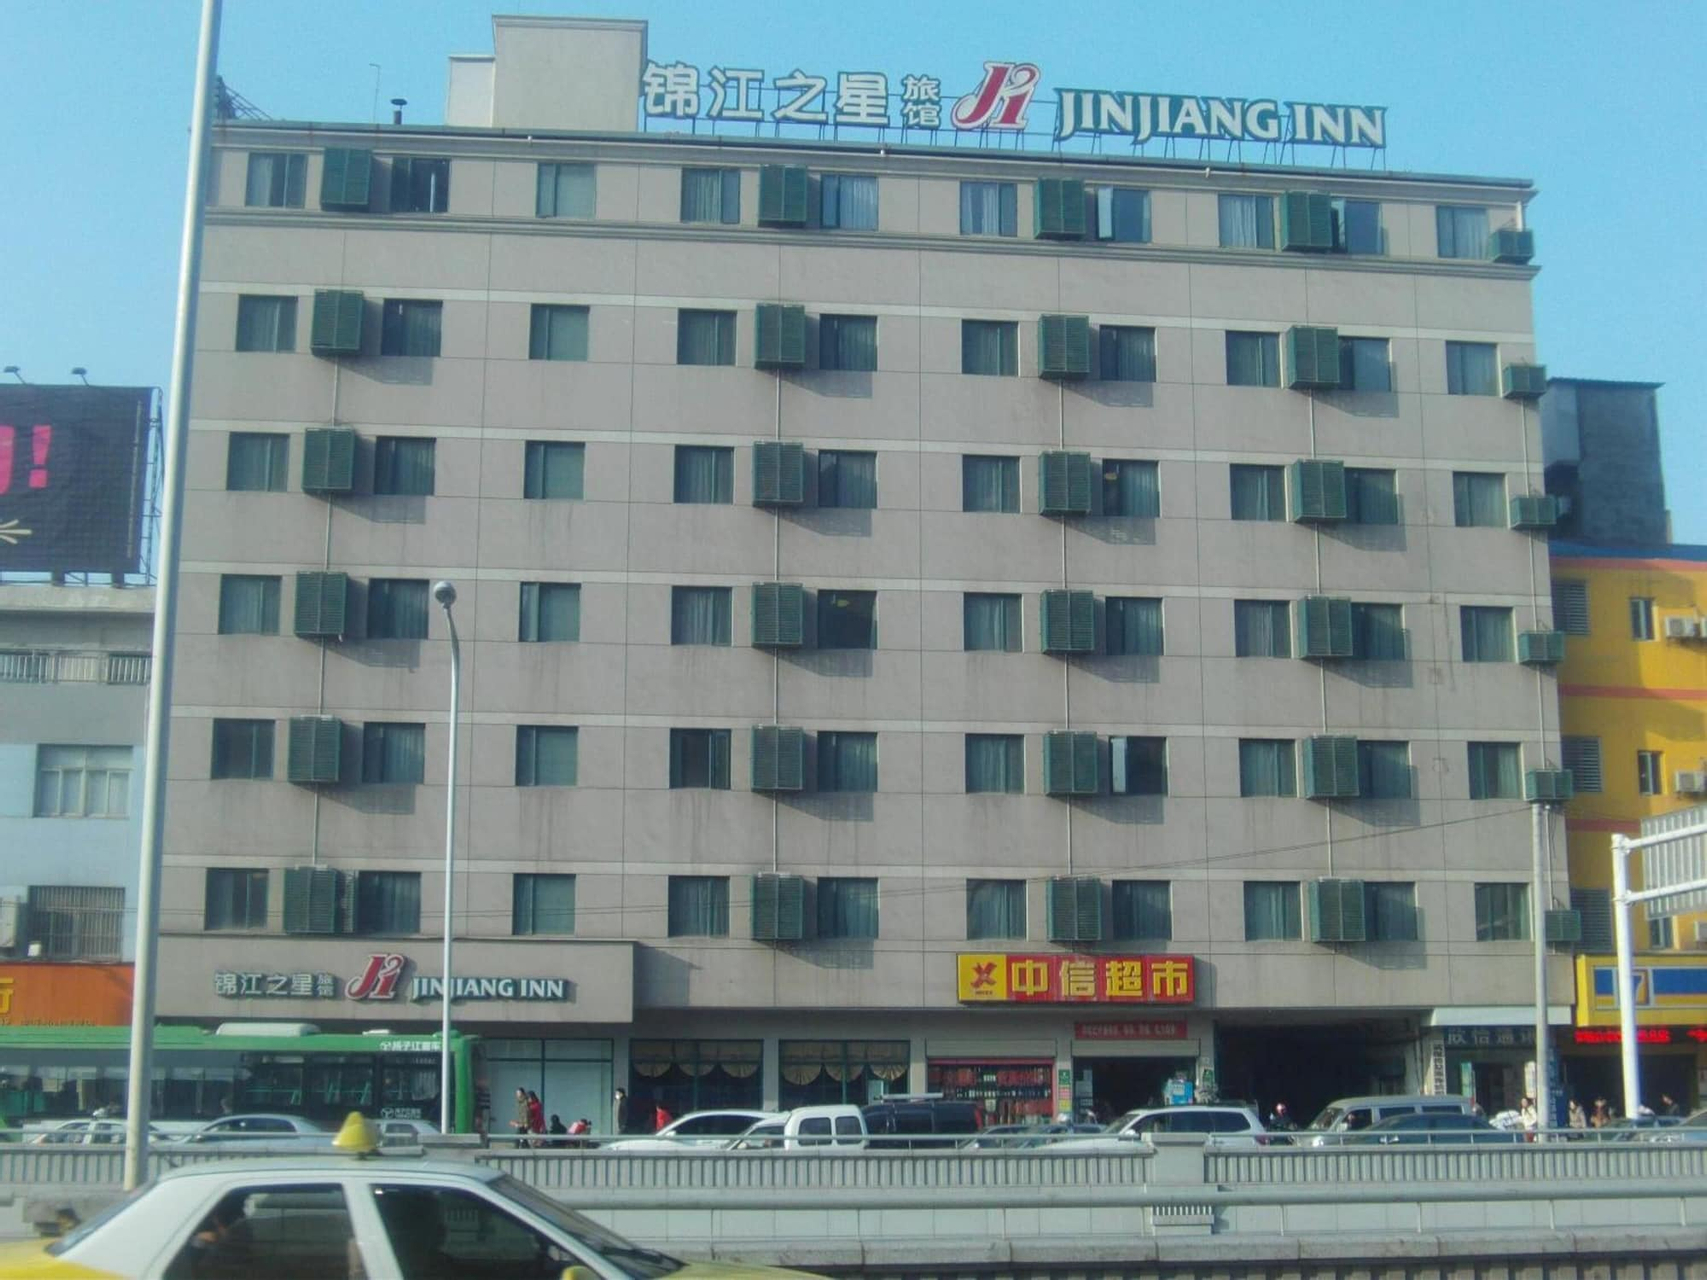 Exterior & Views, Jinjiang Inn Wuhan Hankou Train Station, Wuhan